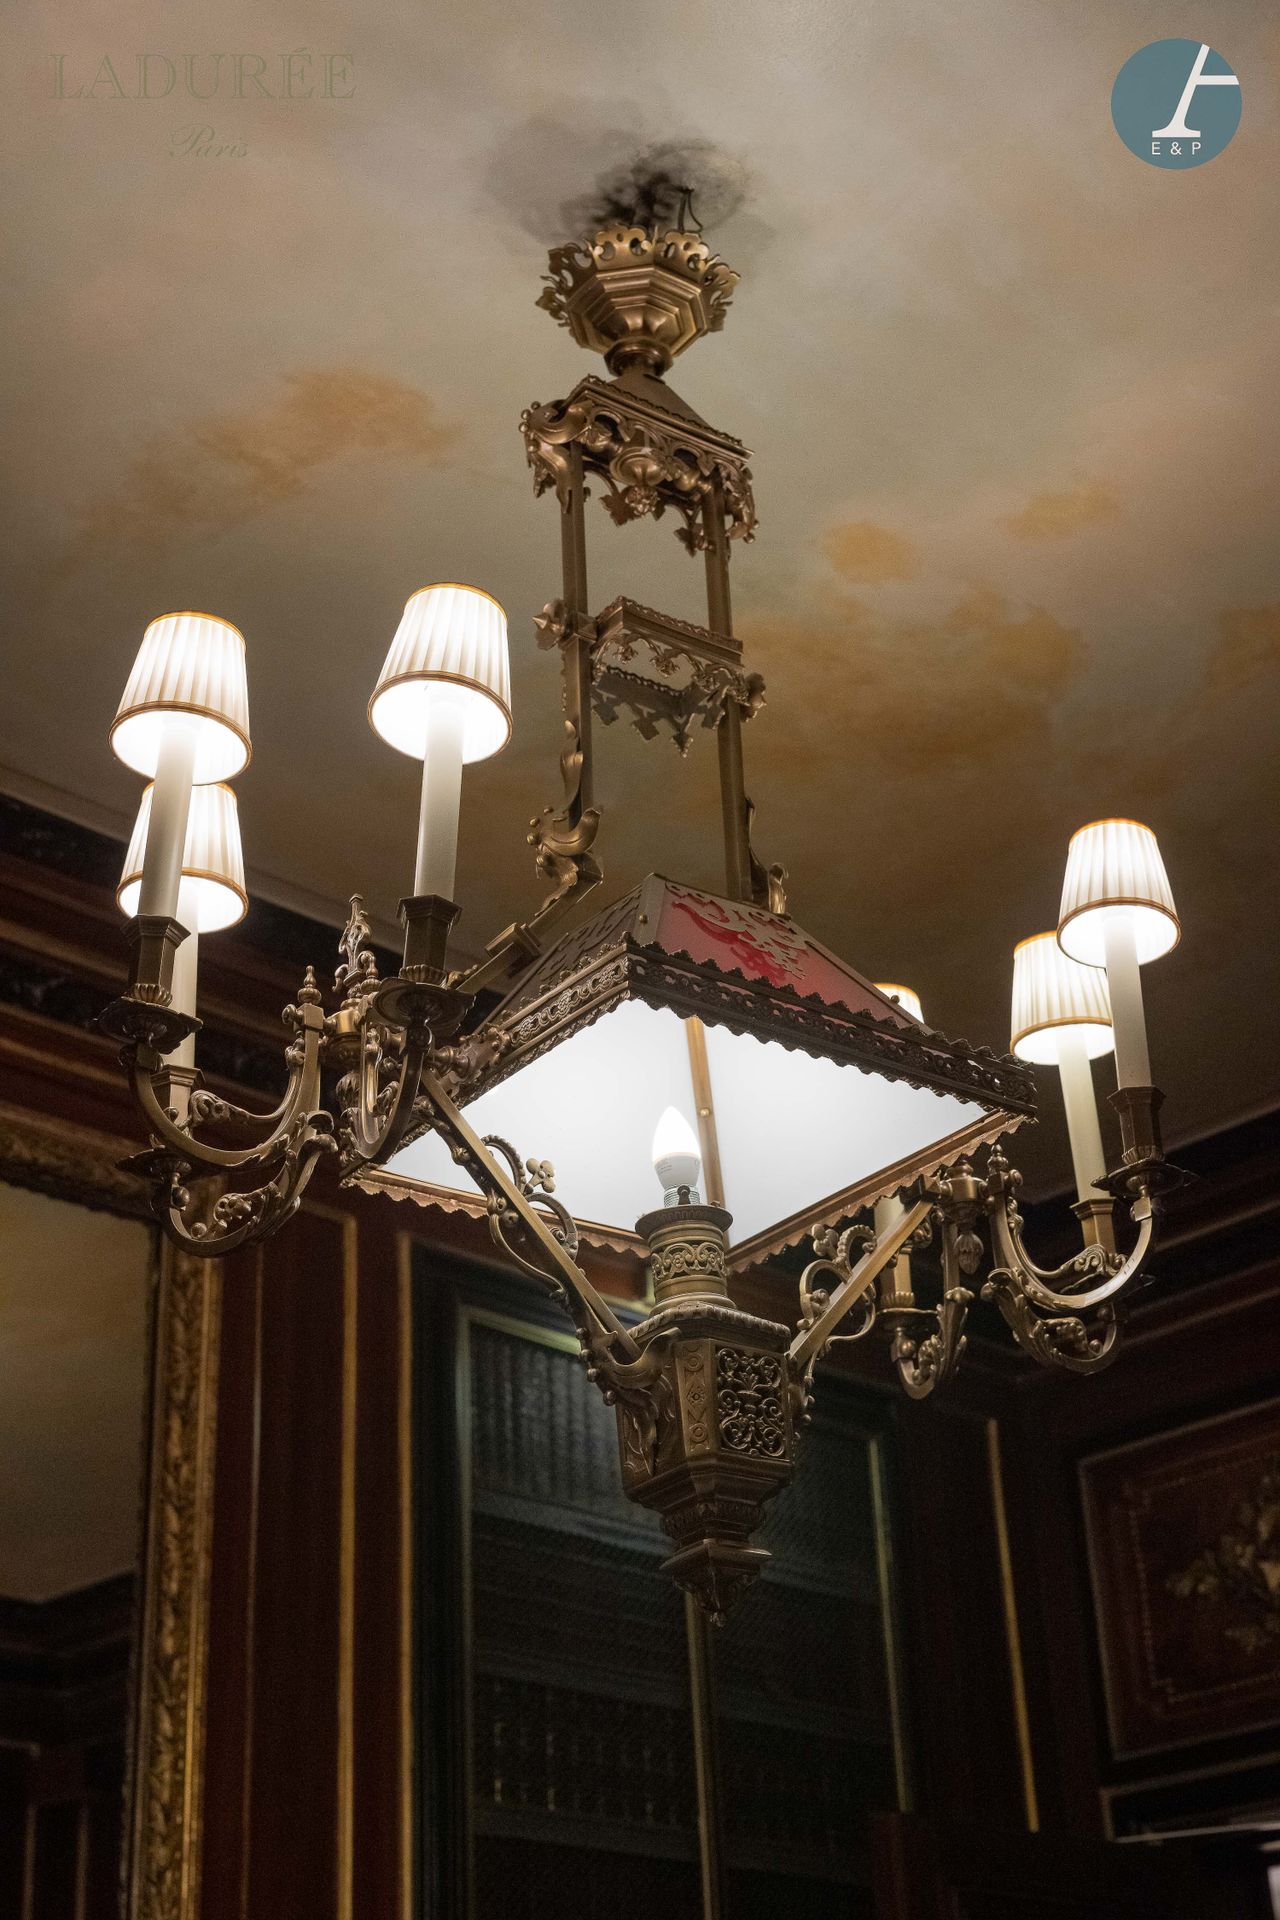 Null 来自拉杜里之家 - 图书馆

重要的鎏金青铜吊灯，有六个灯臂，装饰有中国宝塔。
灯罩为红色乳白玻璃。

新古典主义风格。 

高：145厘米。

使用&hellip;